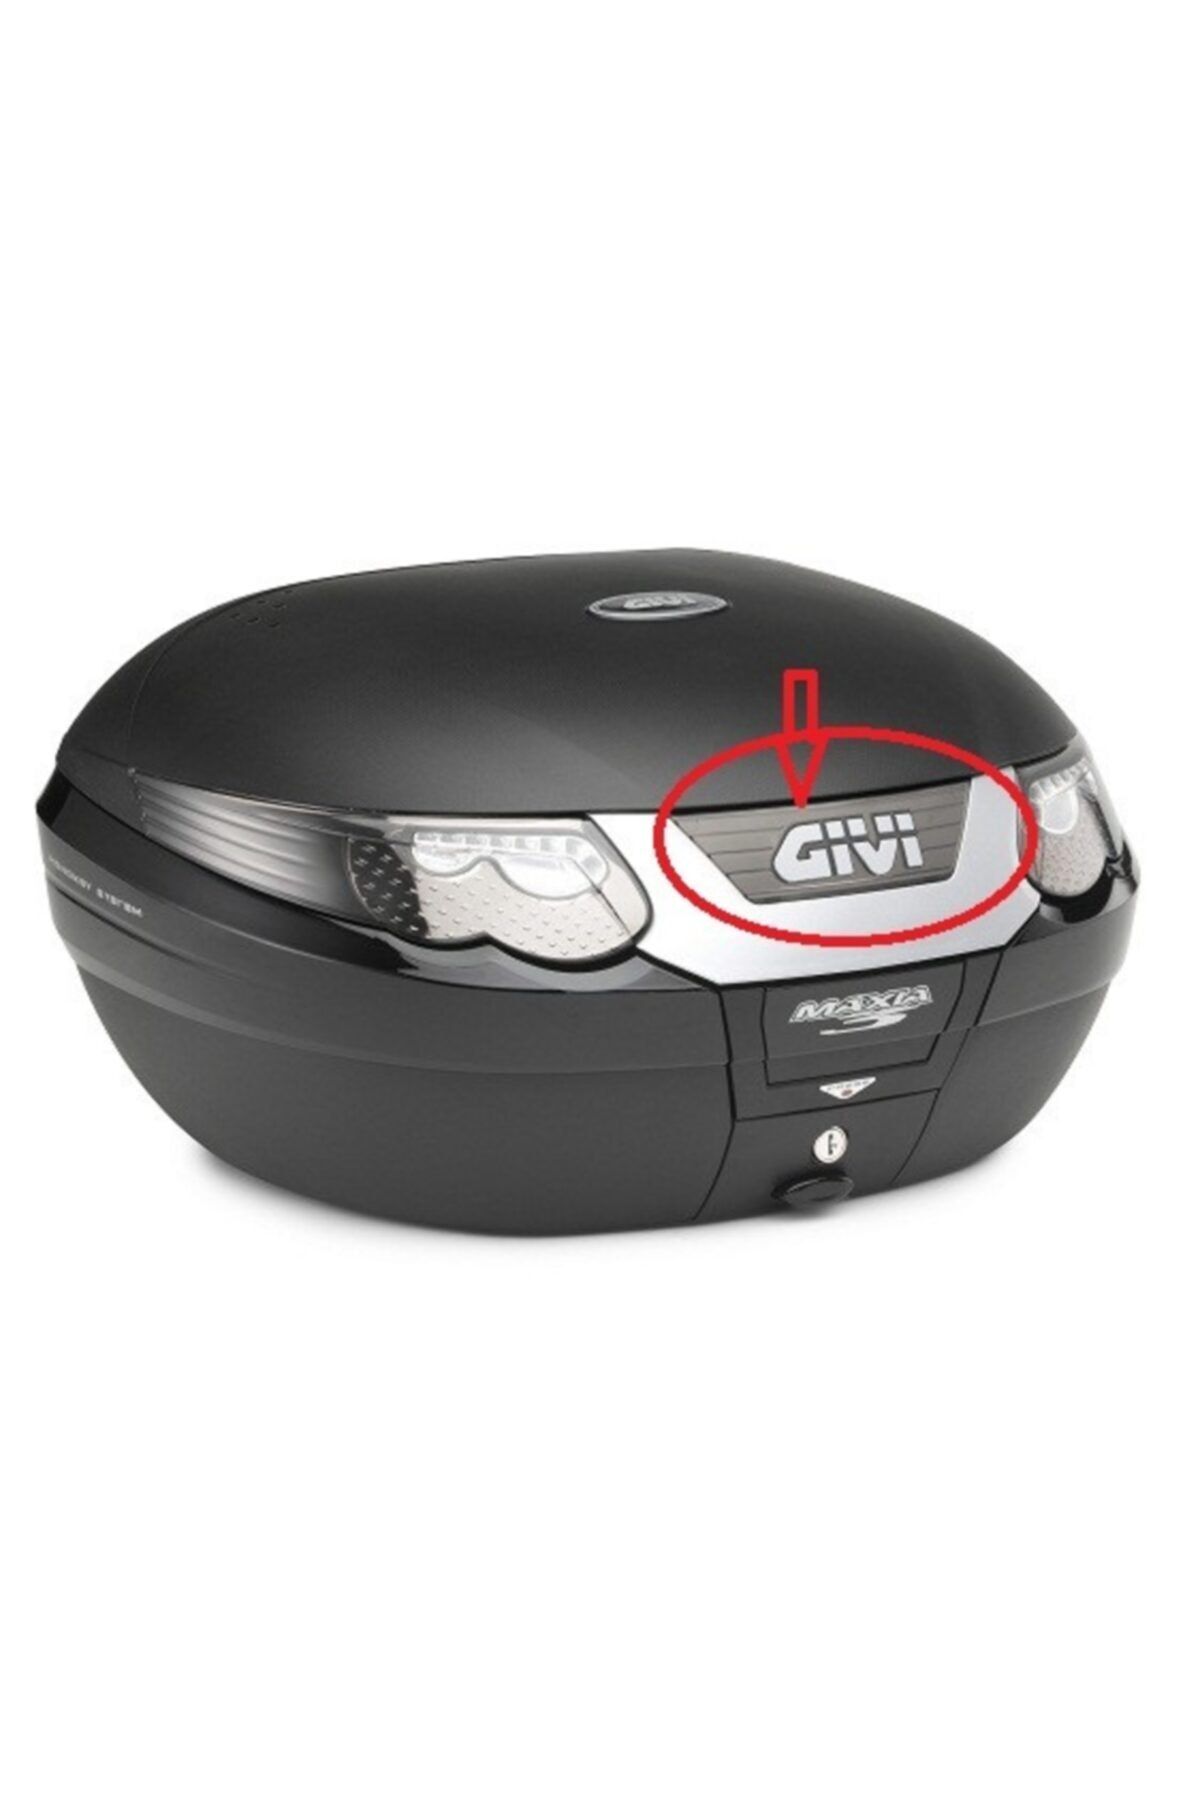 Givi Z694Fr Bag Medium Reflector Set Gray E55